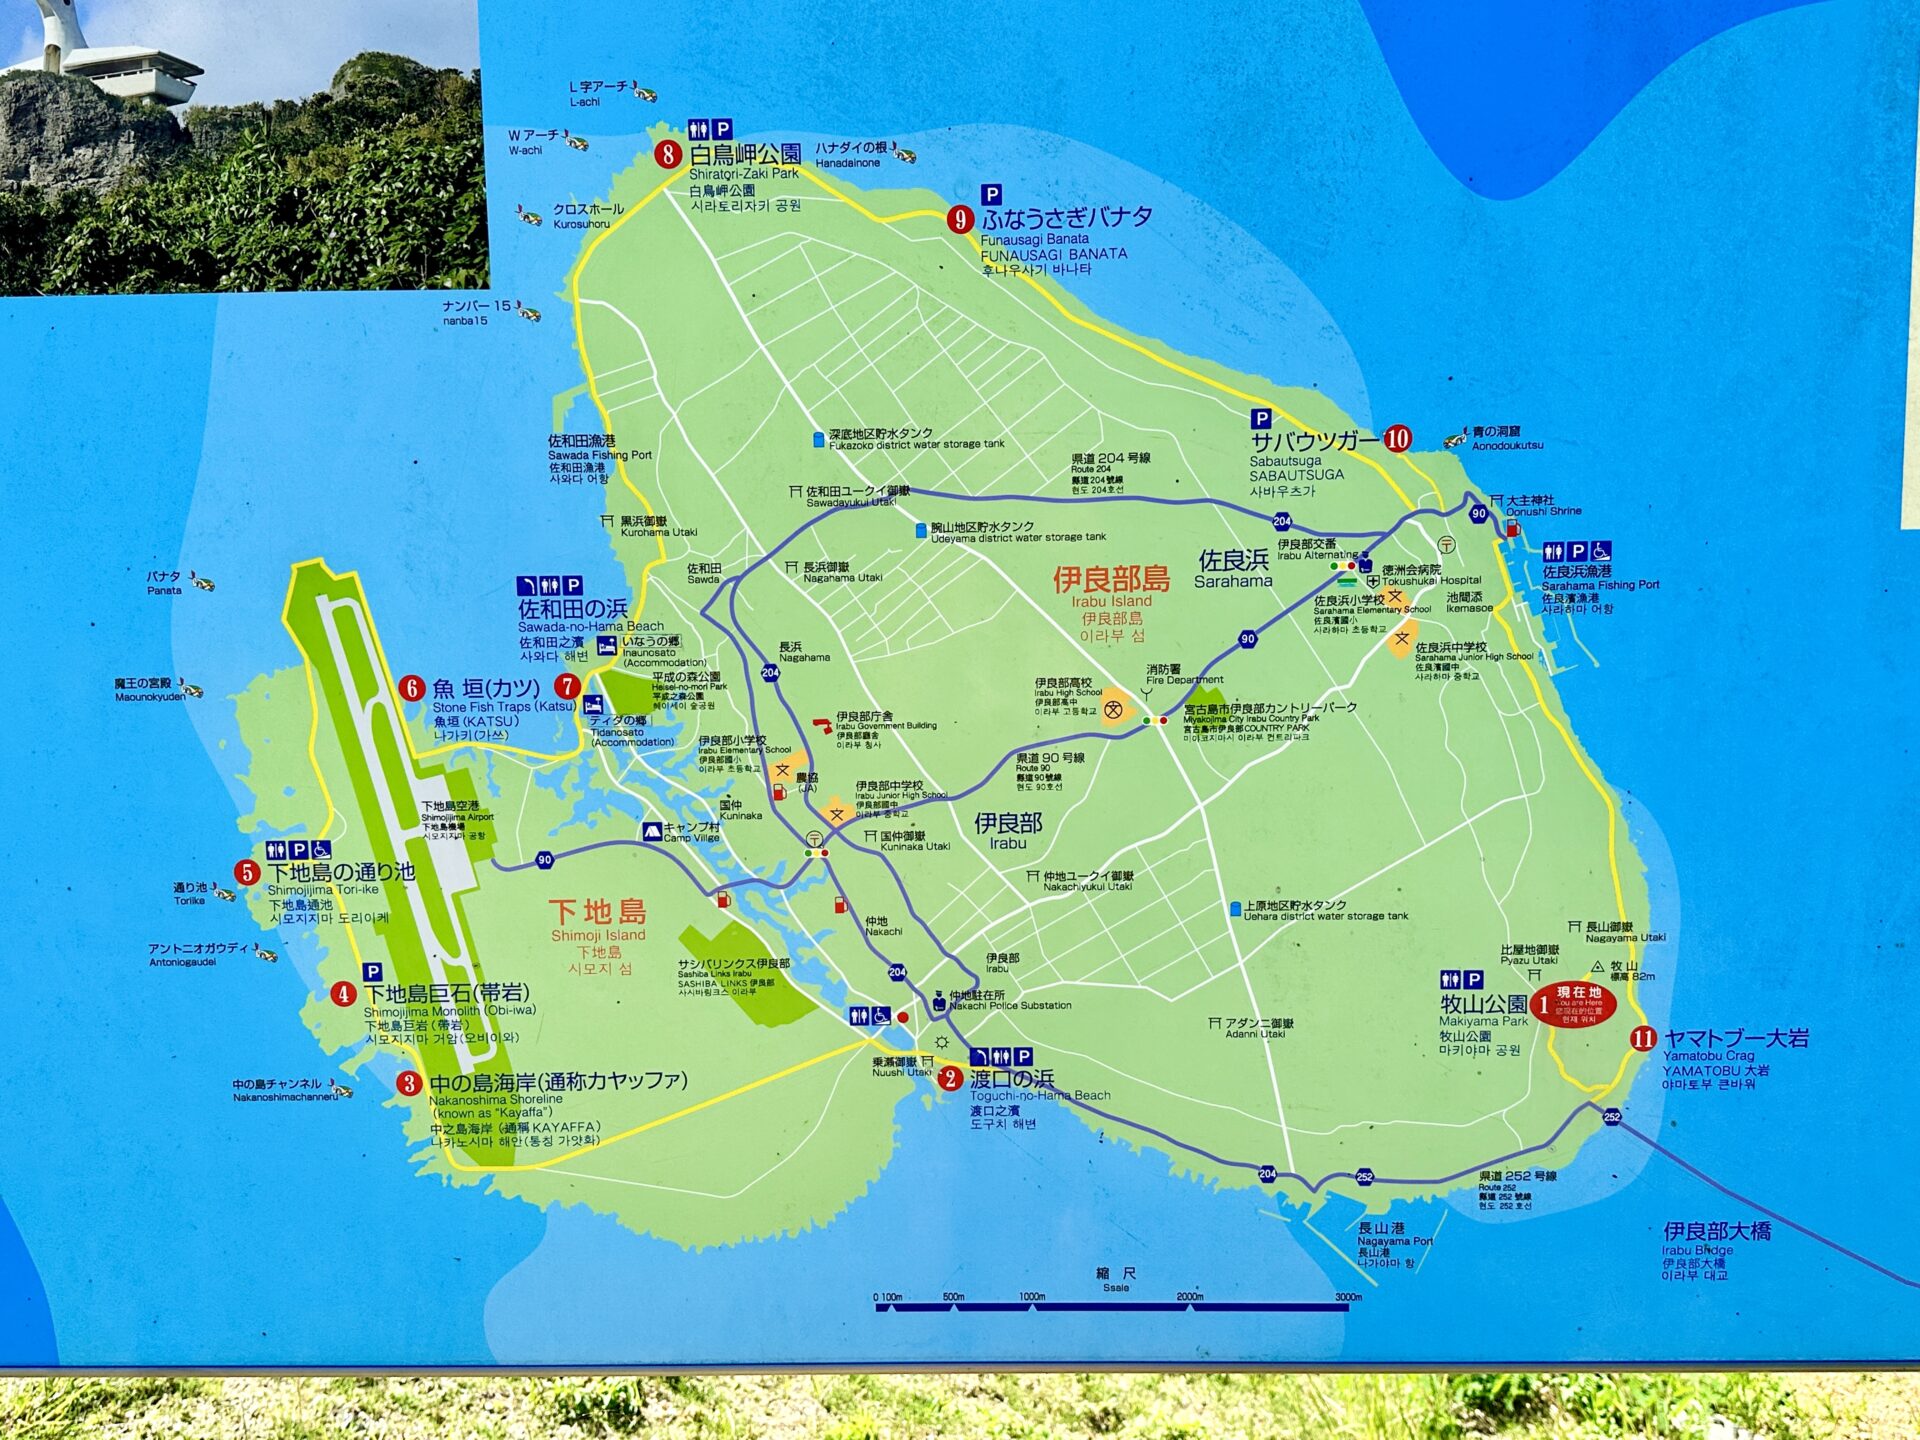 【ブログ旅行記】はじめての宮古島旅行 3泊4日ゆったりモデルコース 牧山展望台マップ